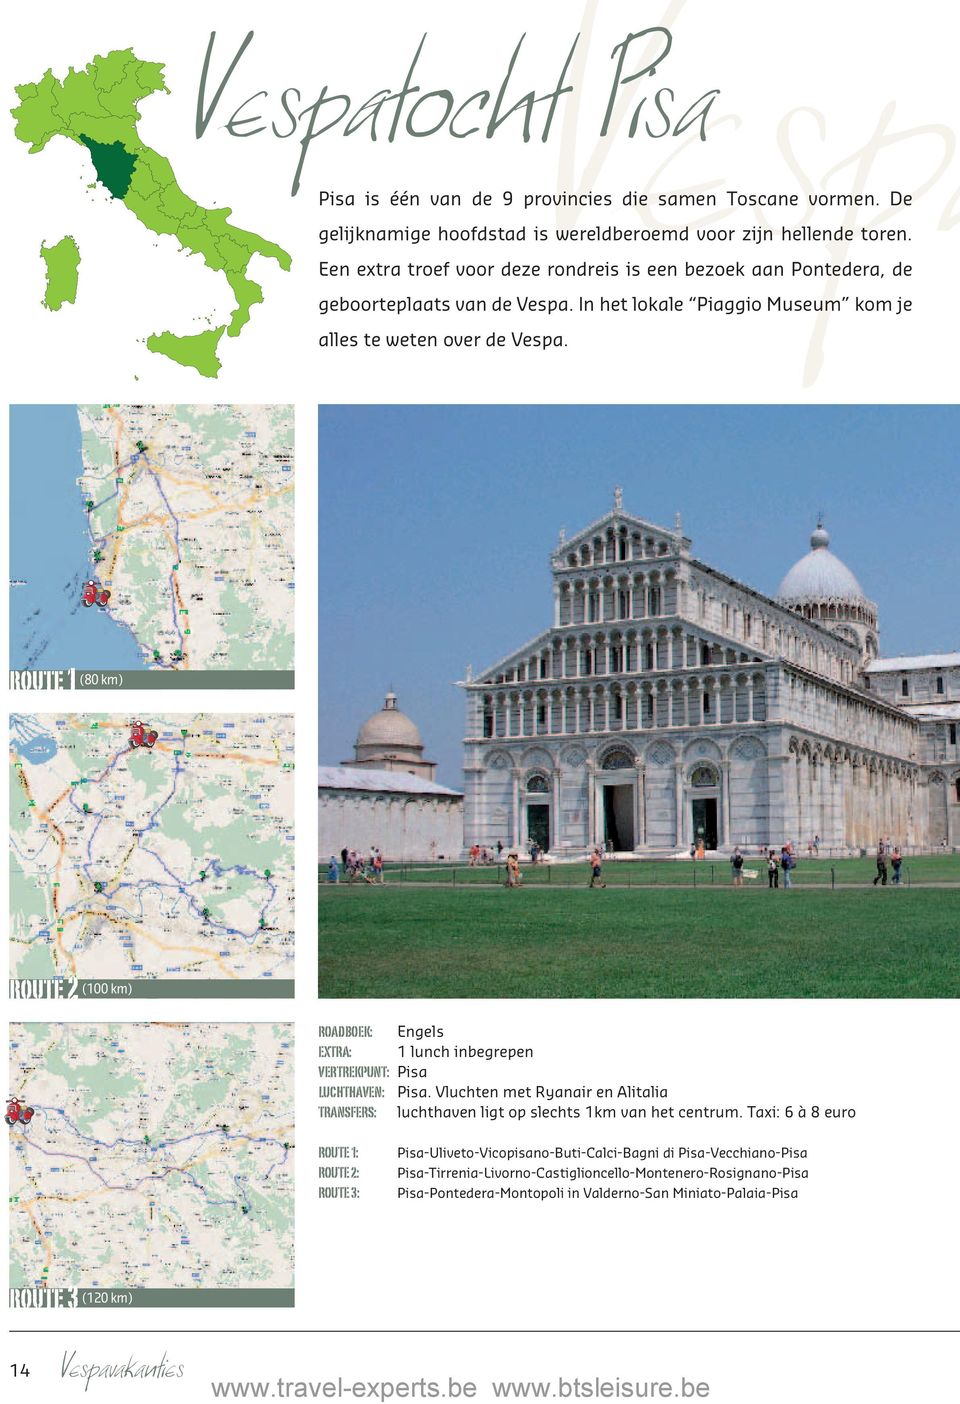 route 1 (80 km) route 2 (100 km) ROADBOEK: Engels EXTRA: 1 lunch inbegrepen VERTREKPUNT: Pisa LUCHTHAVEN: Pisa.